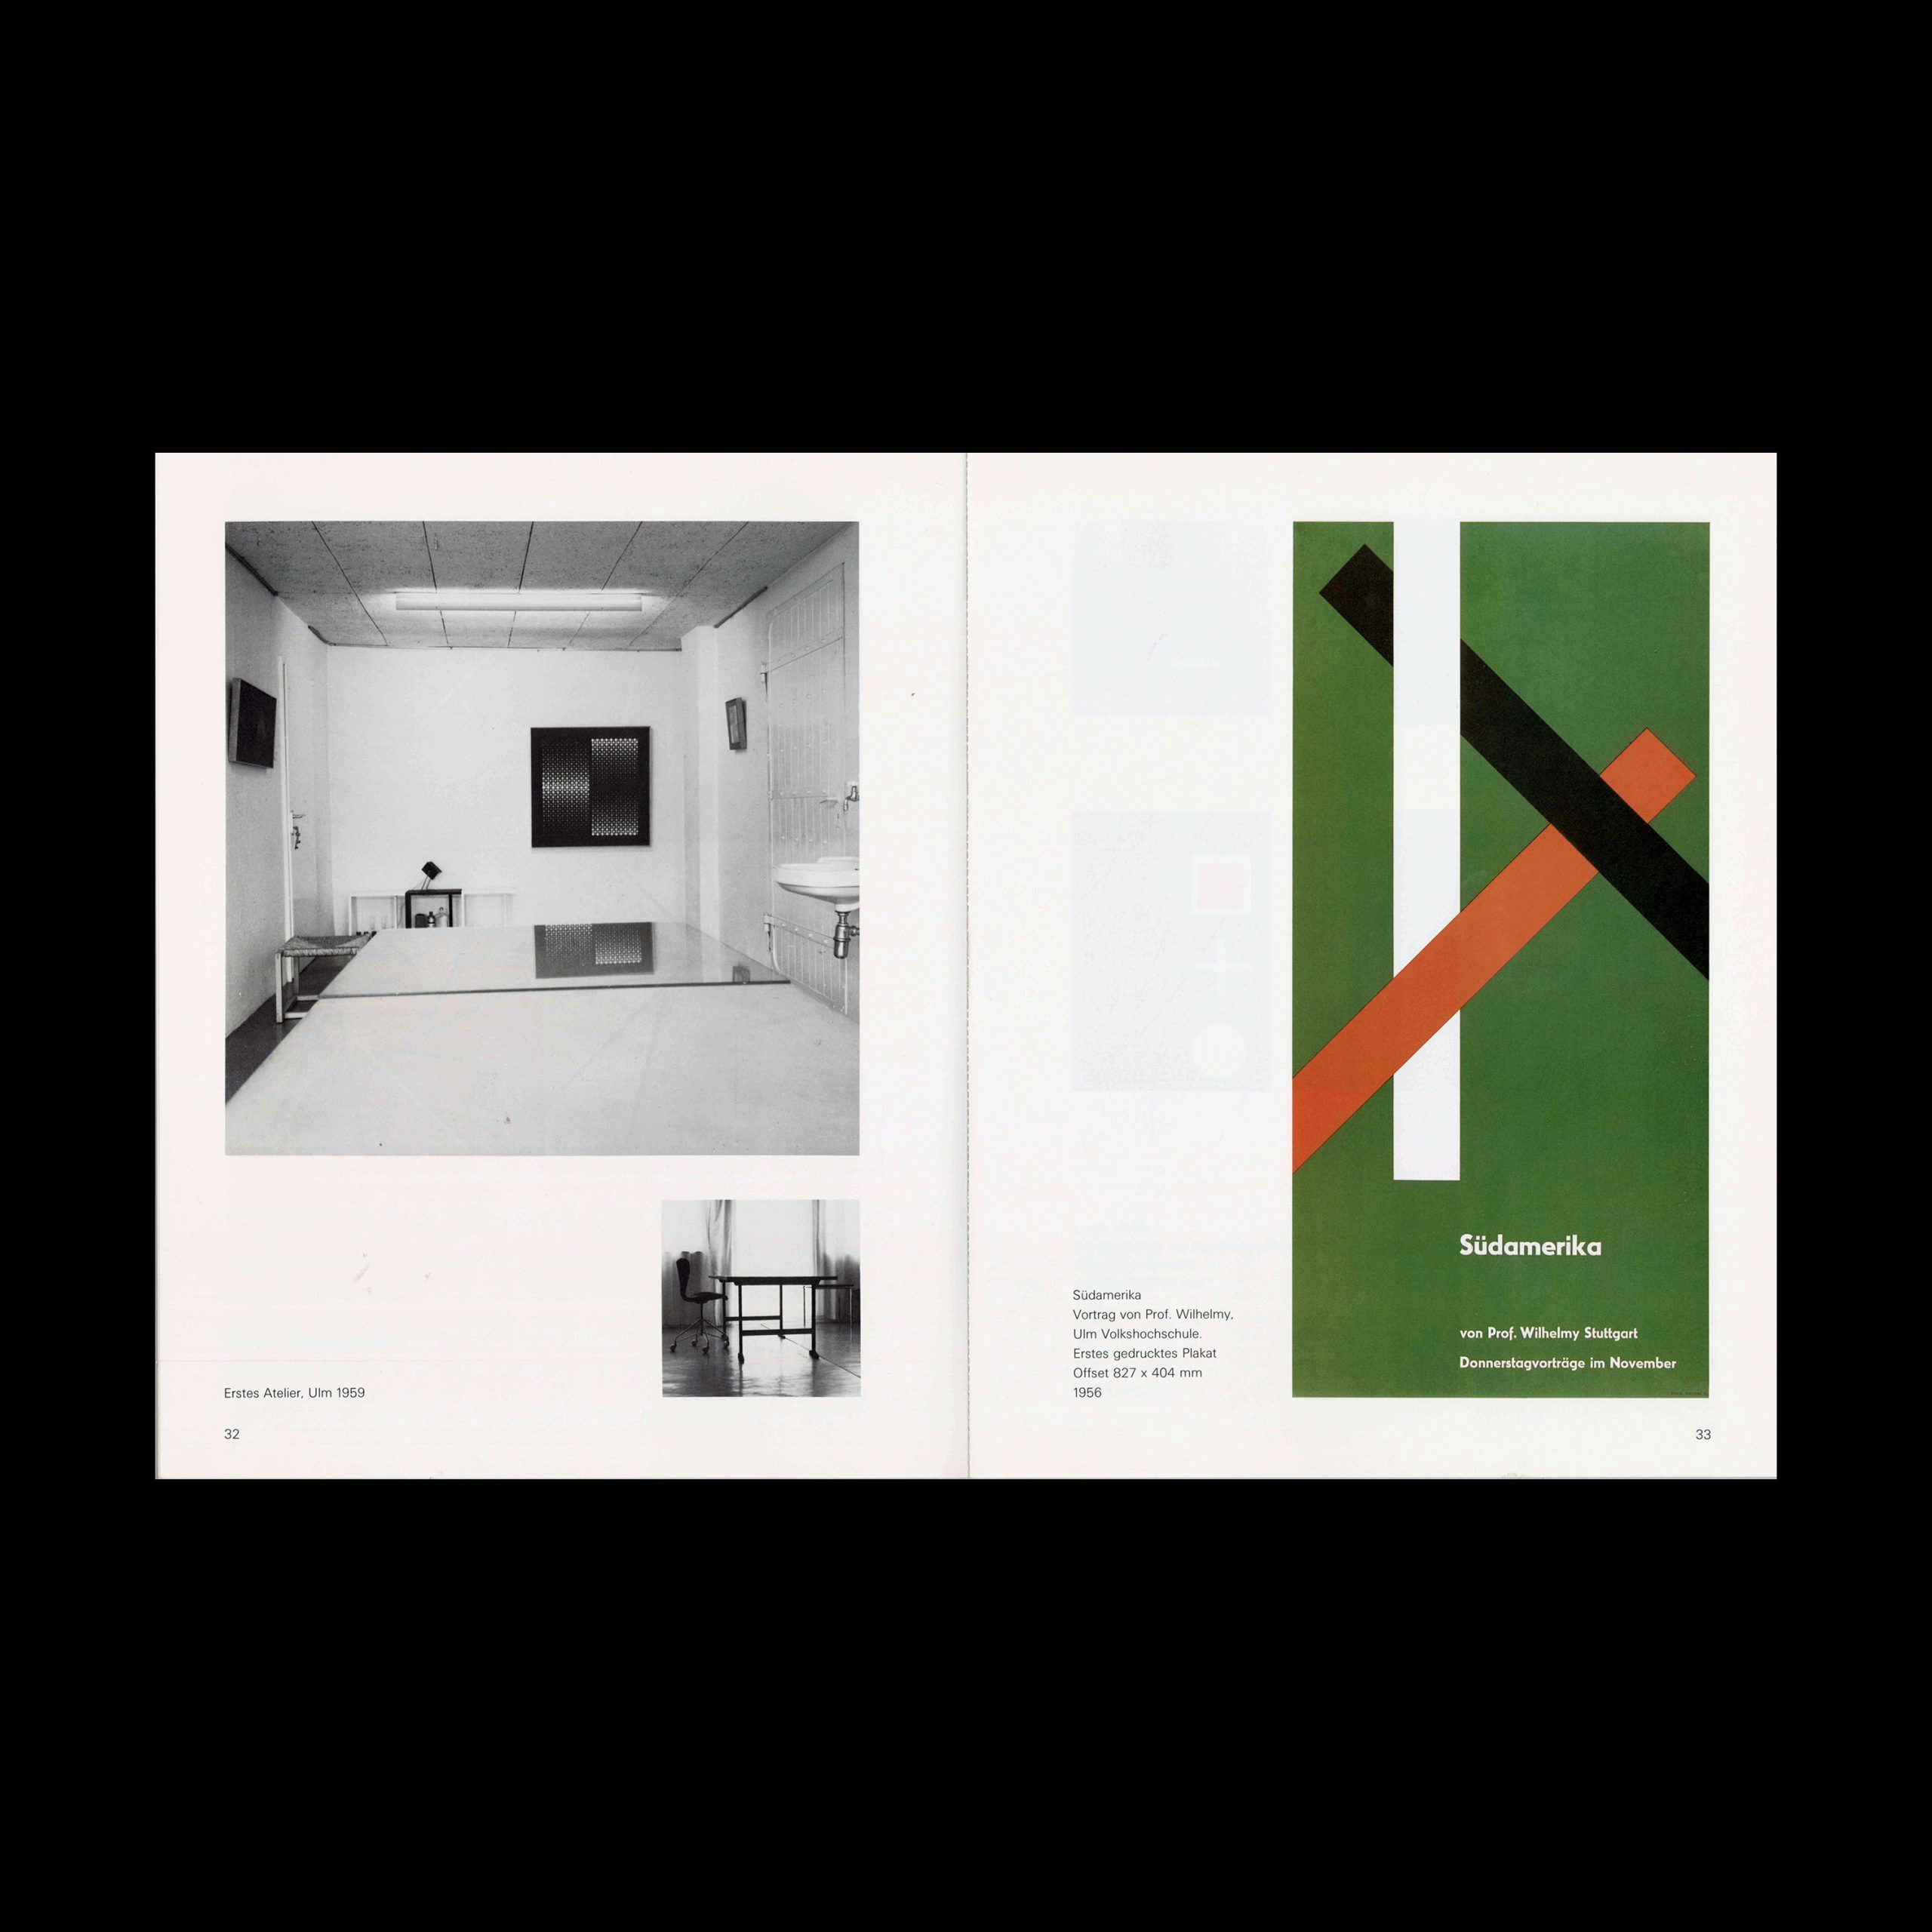 Kunst + Design, Almir Mavignier, Preisträger der Stankowski-Stiftung, 1985